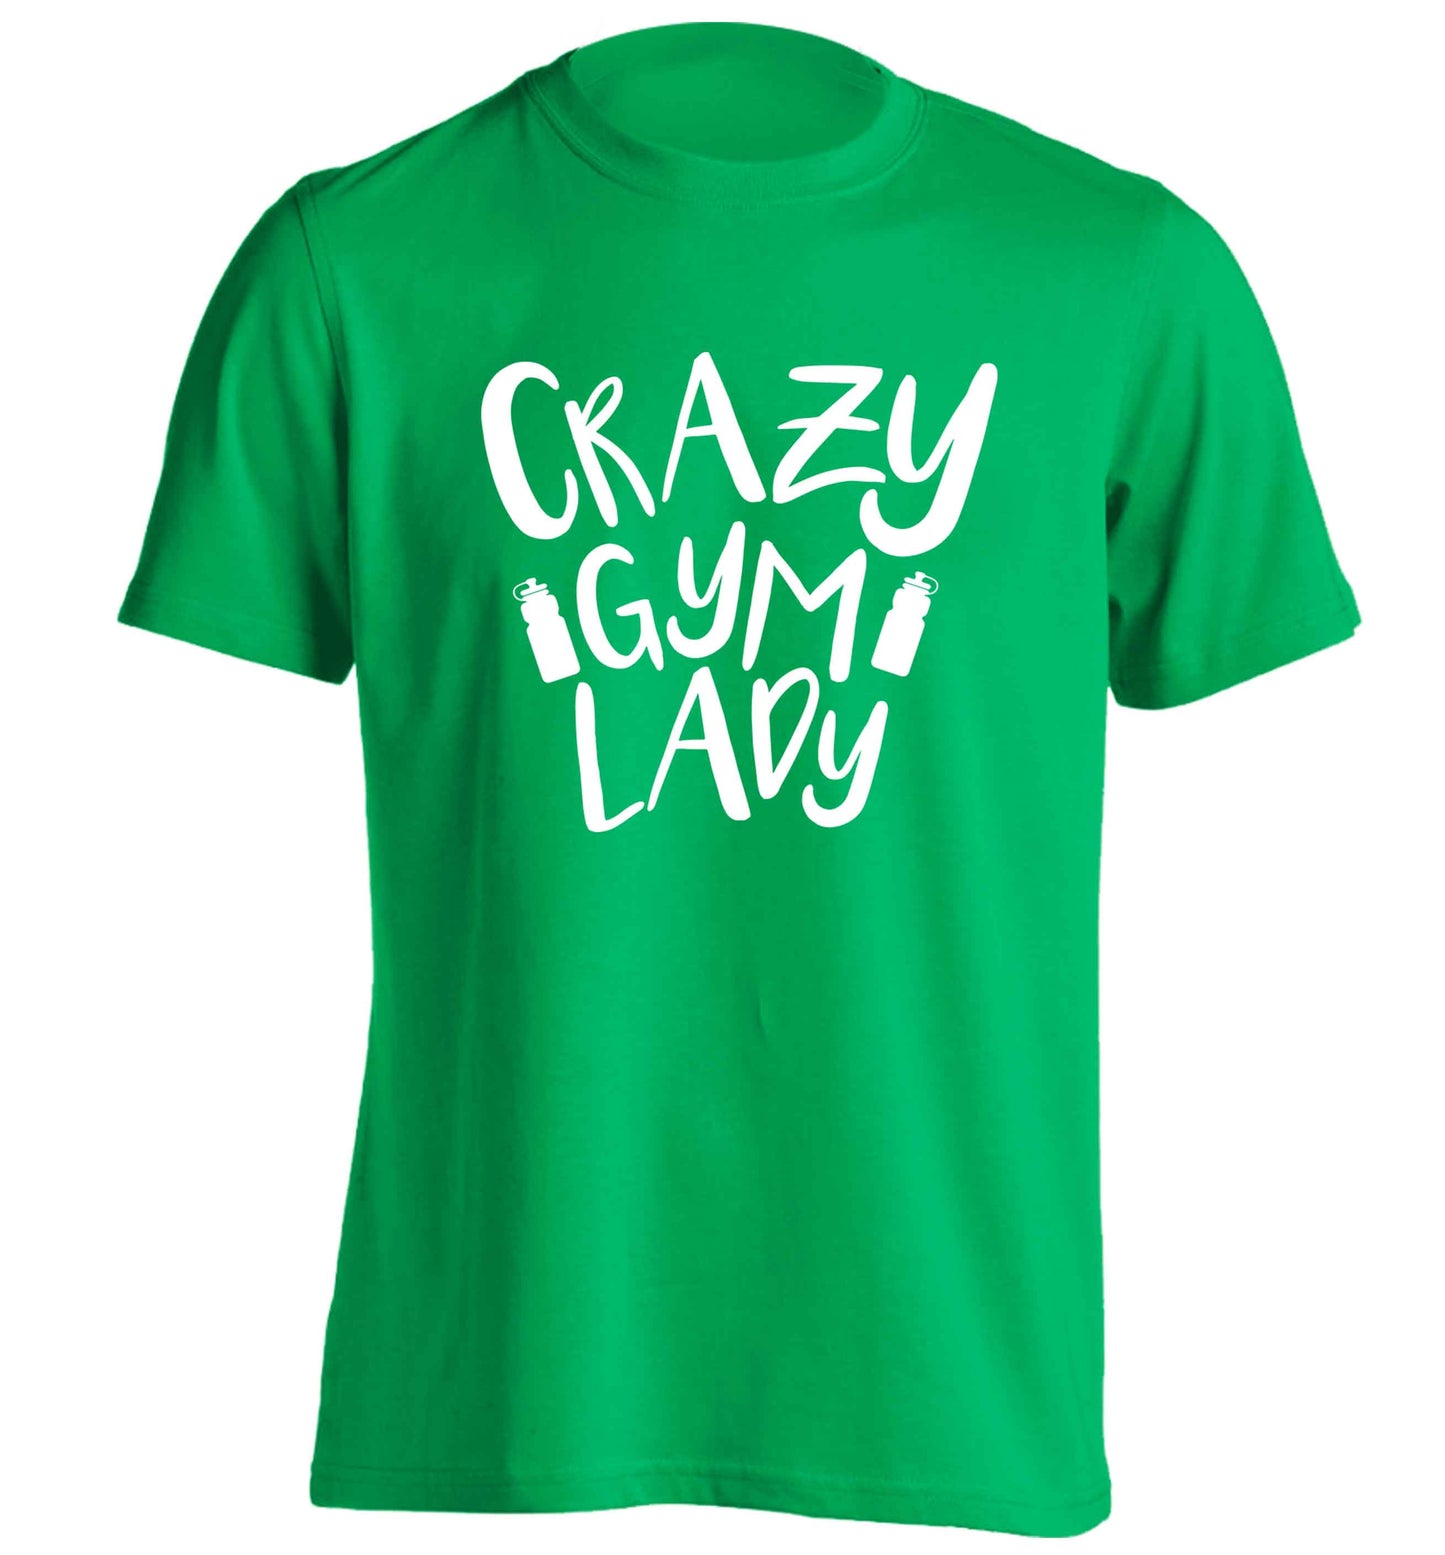 Crazy gym lady adults unisex green Tshirt 2XL